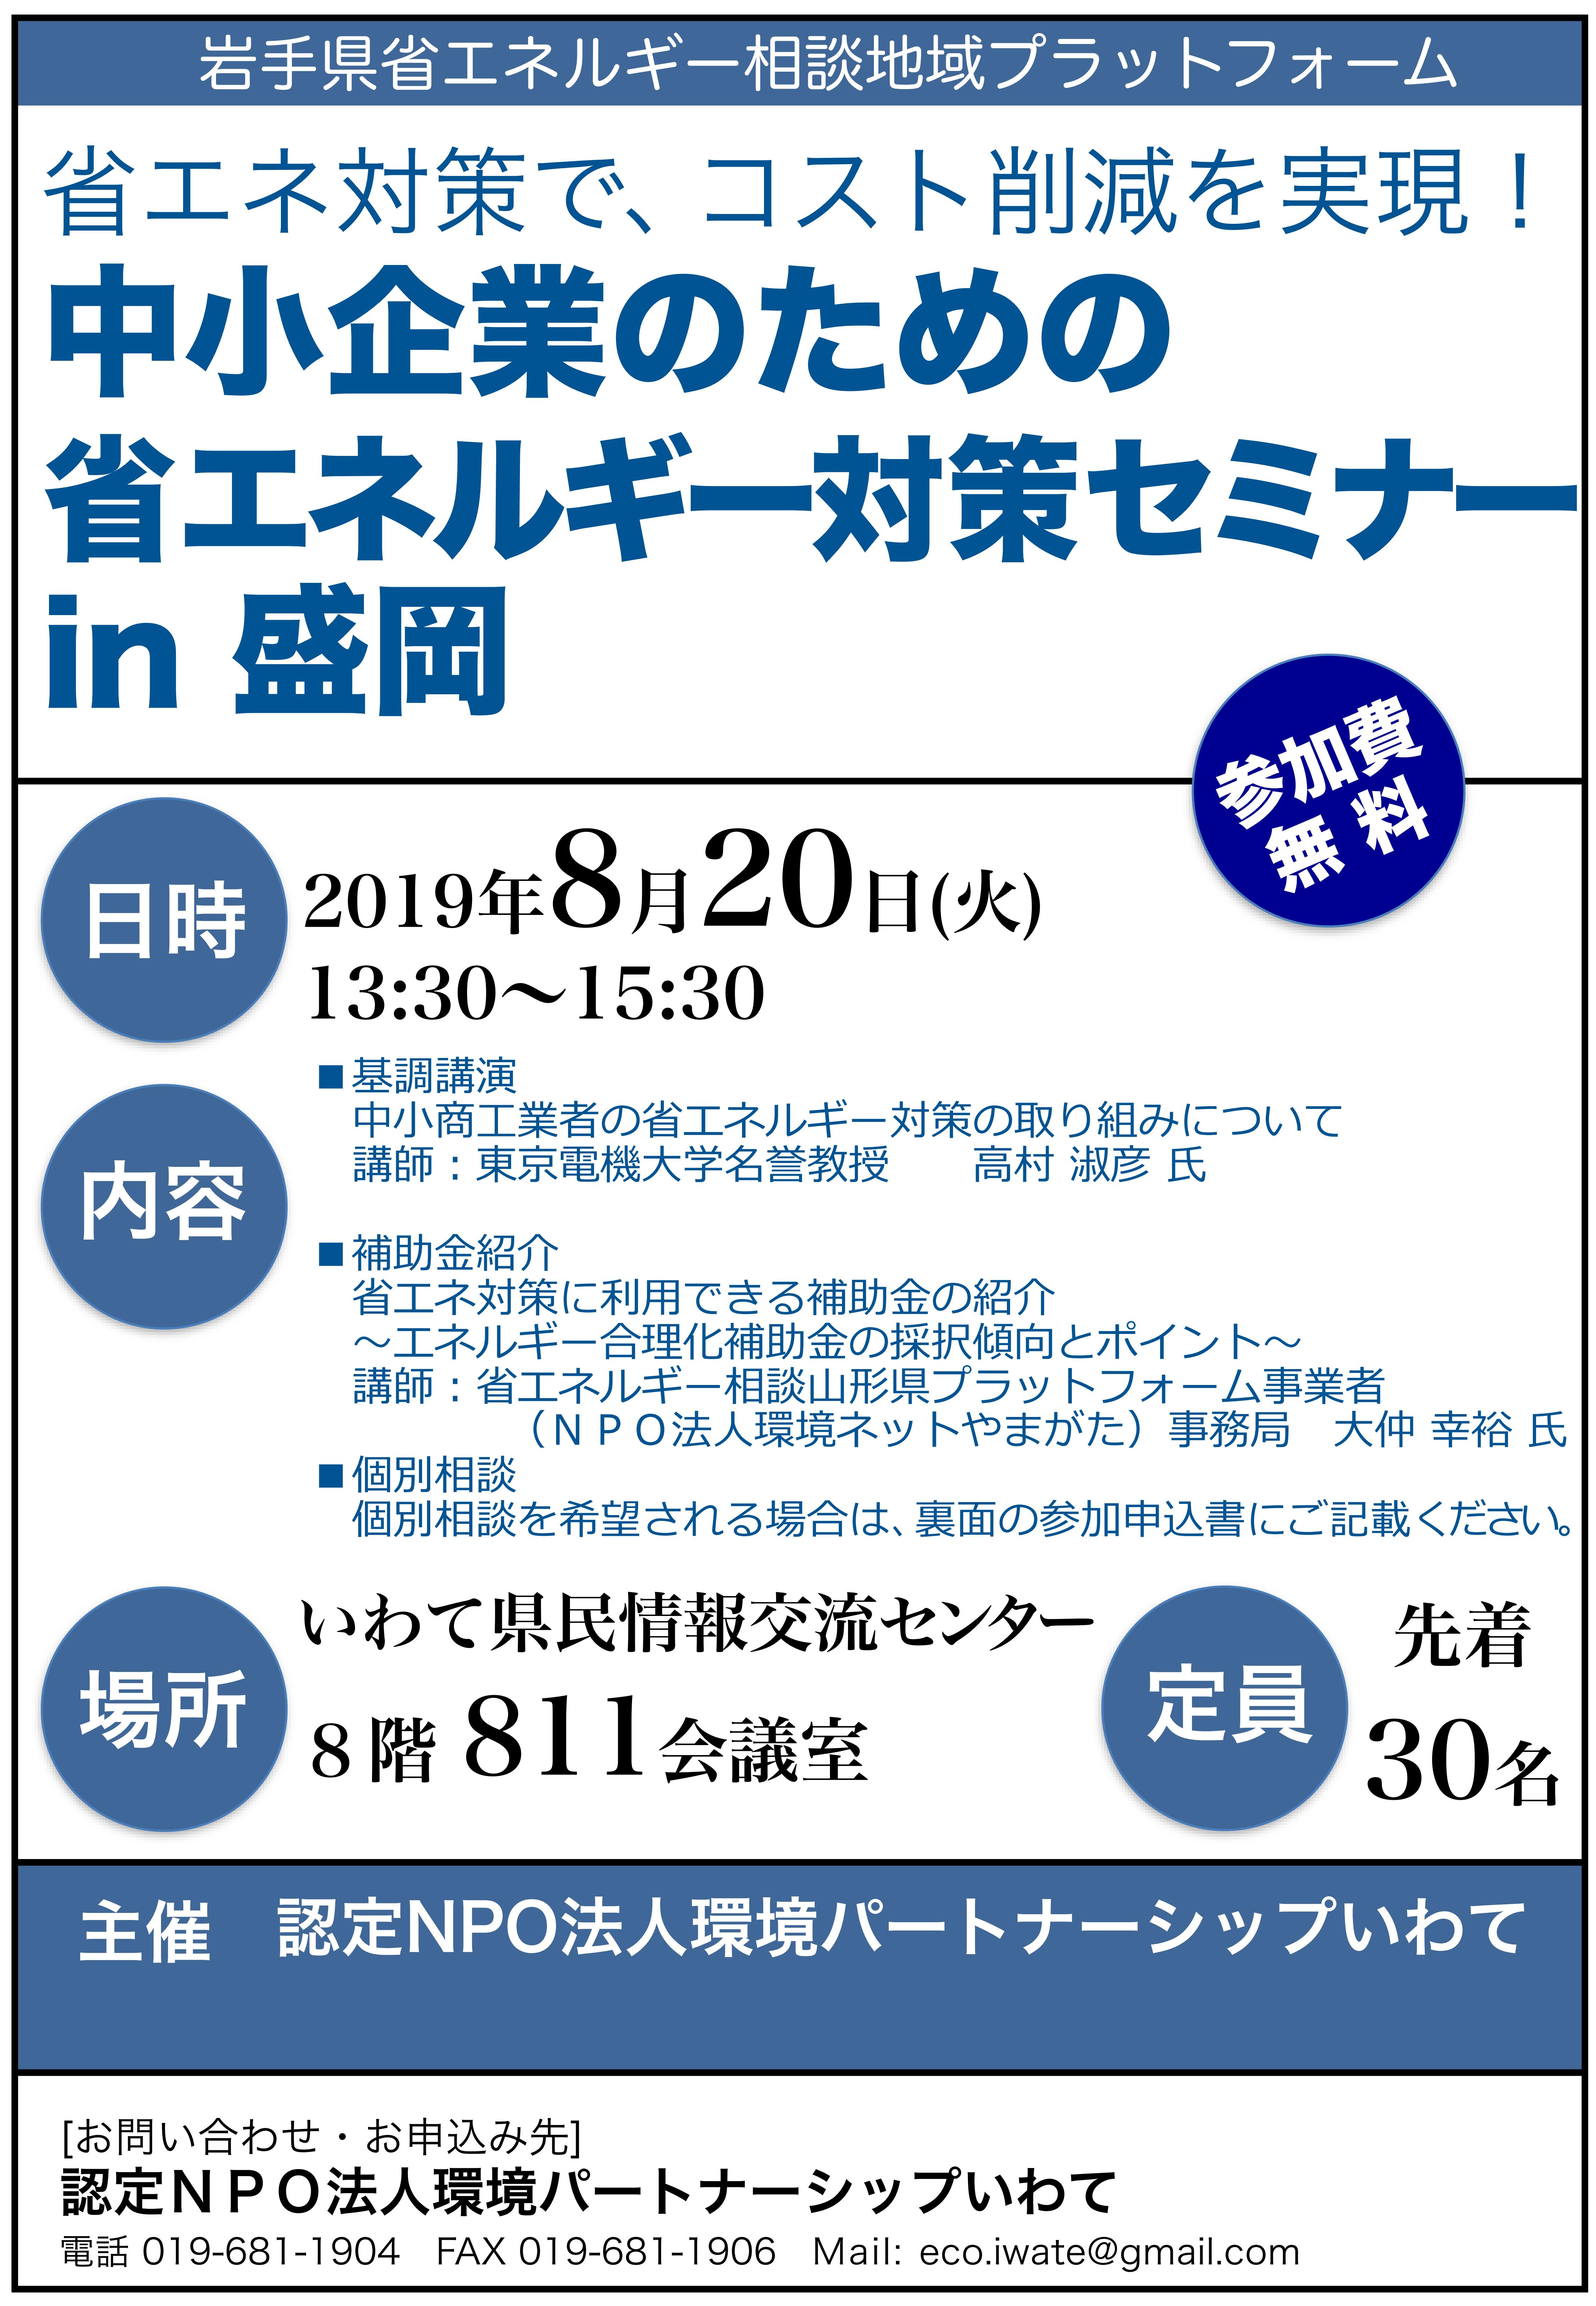 http://www.iwate-eco.jp/%E7%9C%81%E3%82%A8%E3%83%8D%E3%82%BB%E3%83%9F%E3%83%8A%E3%83%BCF5_01_0.jpg